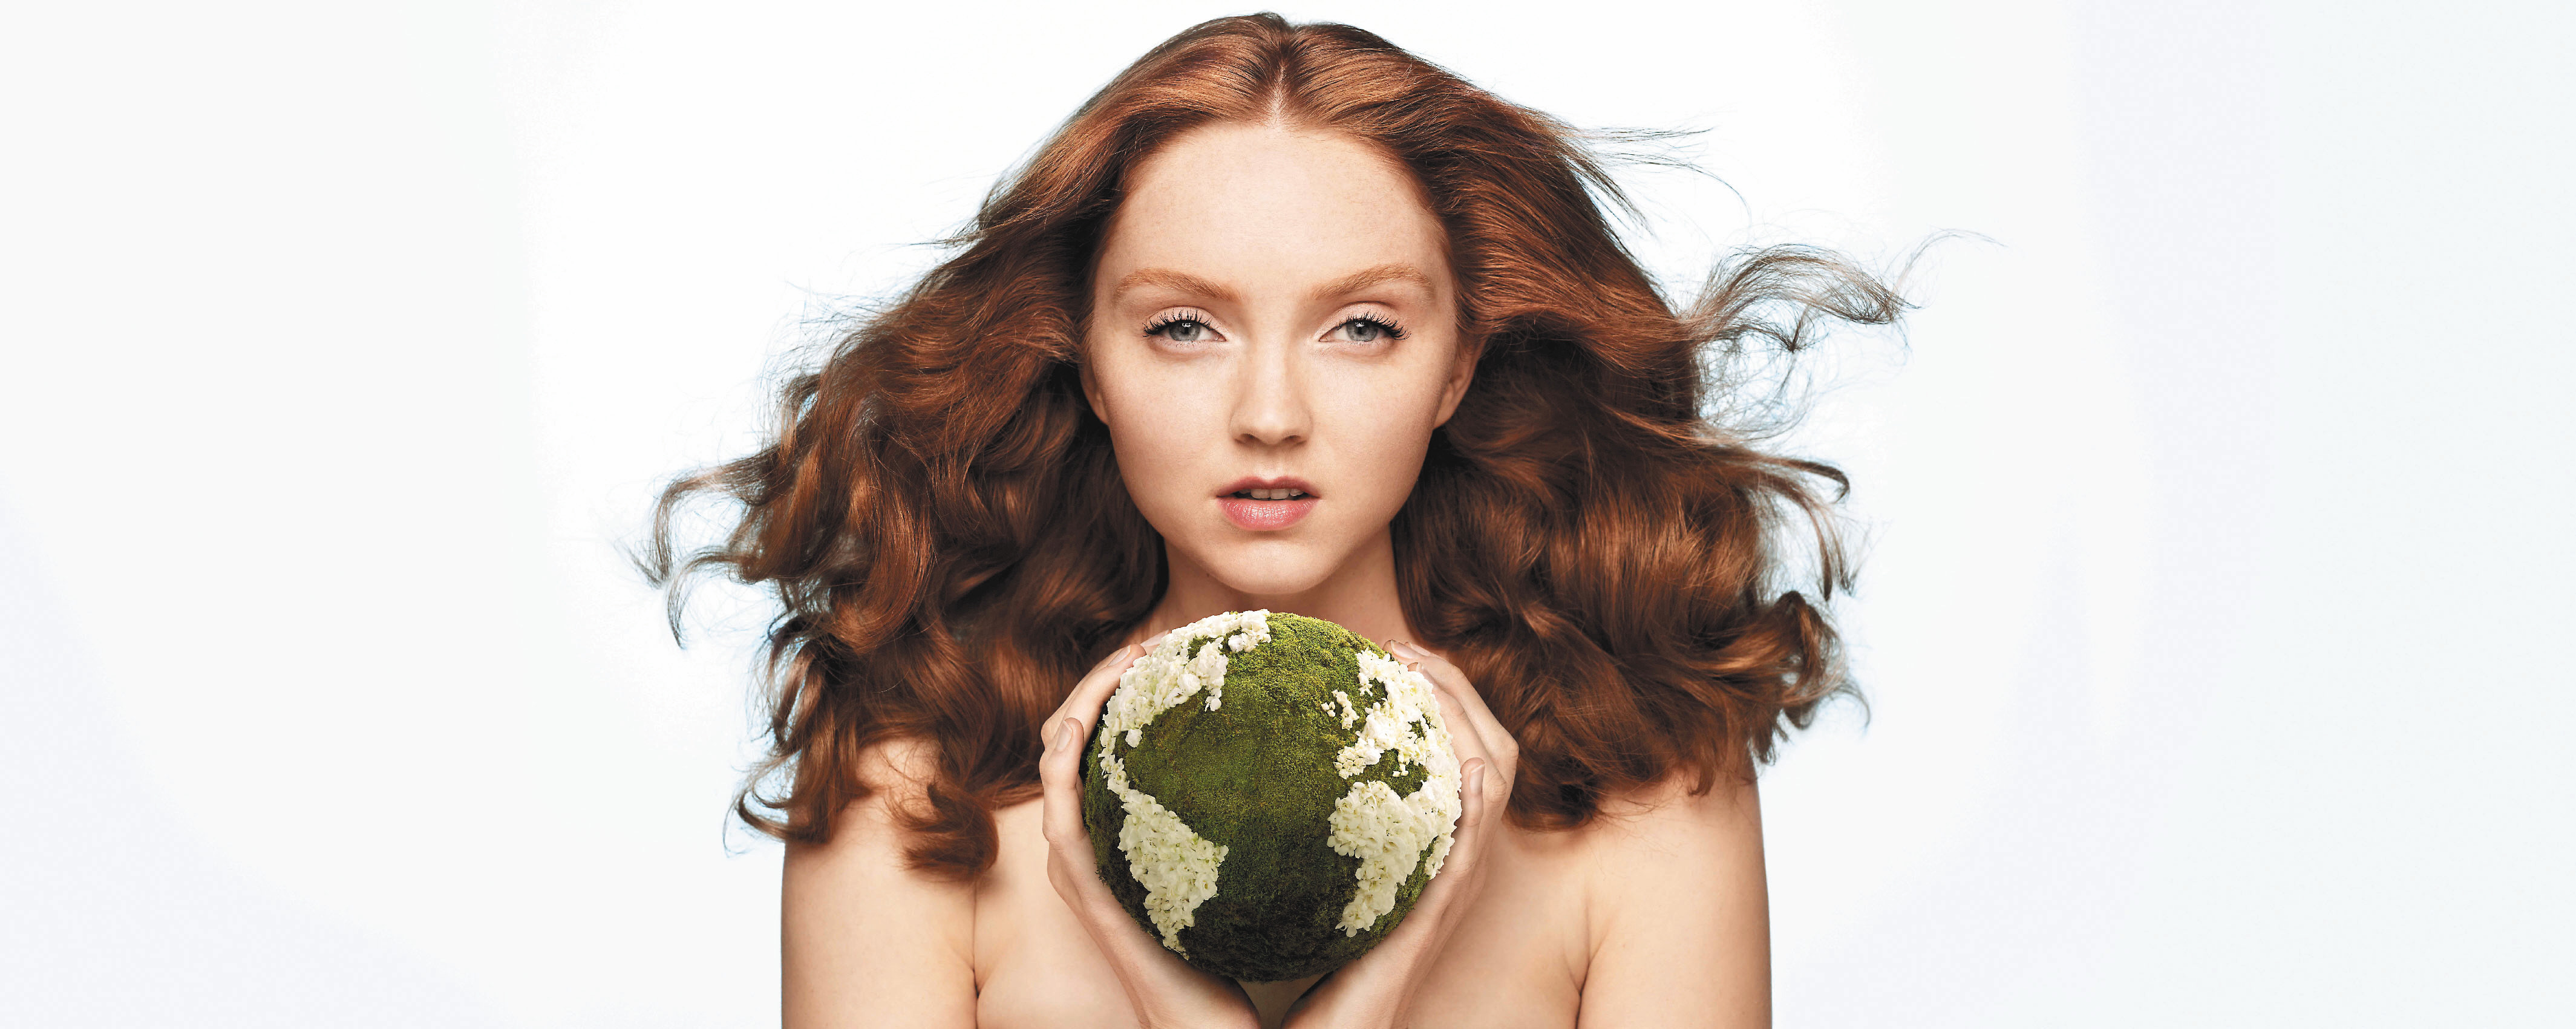 Die umweltfreundliche Toilettenartikelkette The Body Shop hat Lily Cole als Botschafterin engagiert